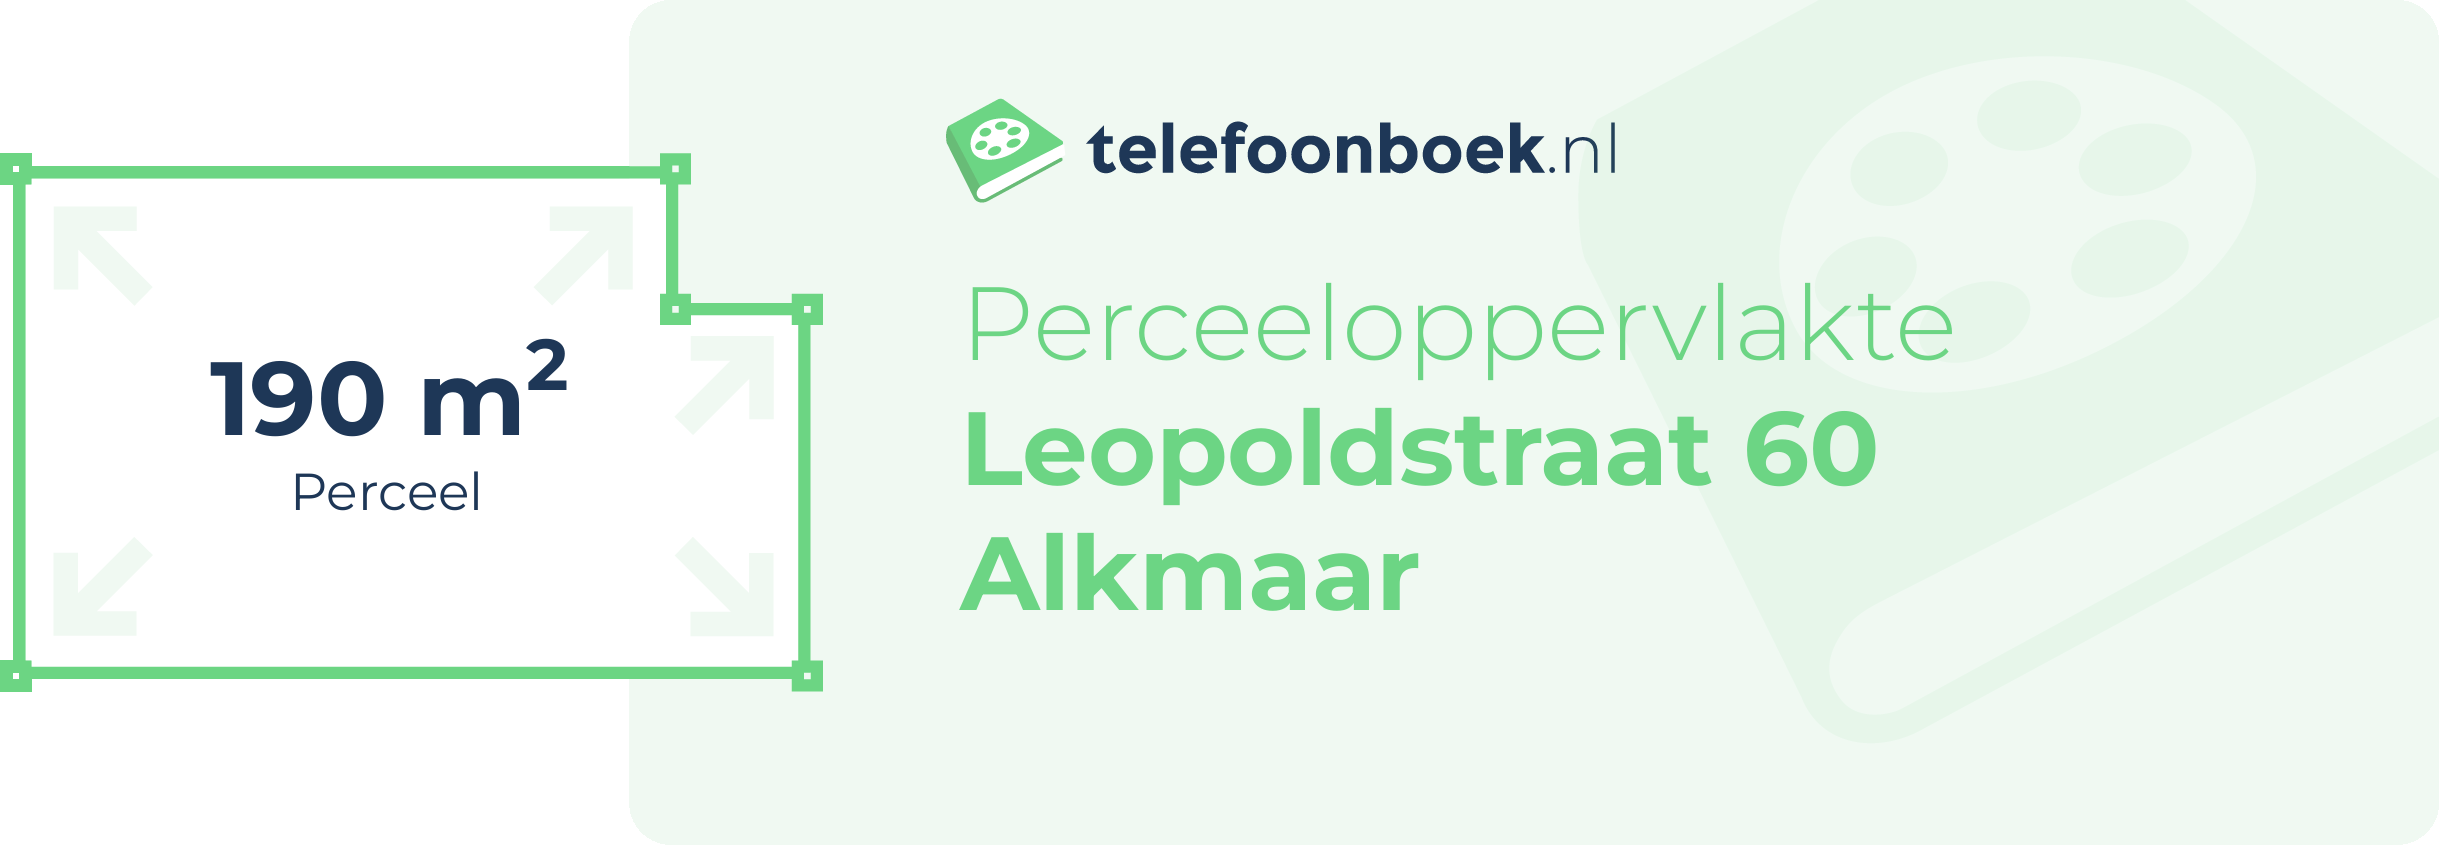 Perceeloppervlakte Leopoldstraat 60 Alkmaar